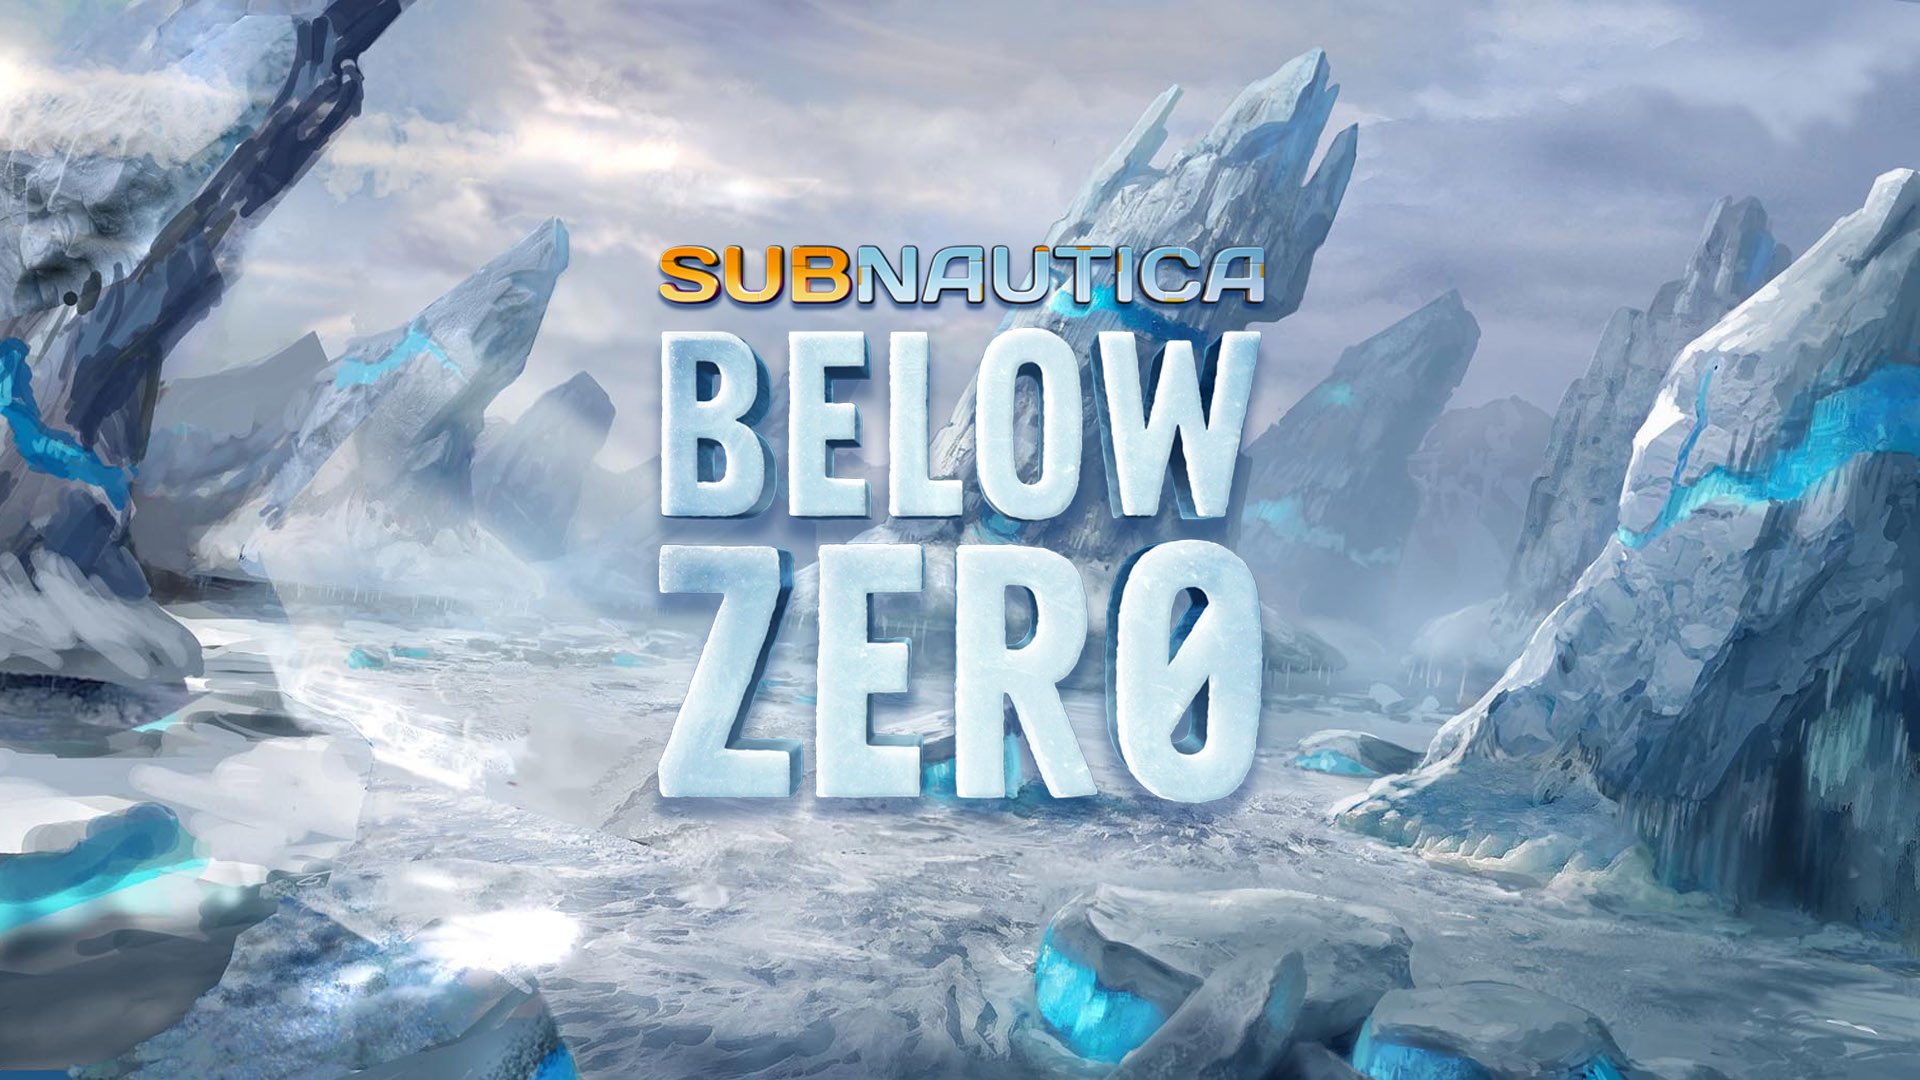 Subnautica: Below Zero, постер № 1. Обратная связь: сообщить об ошибке, при...